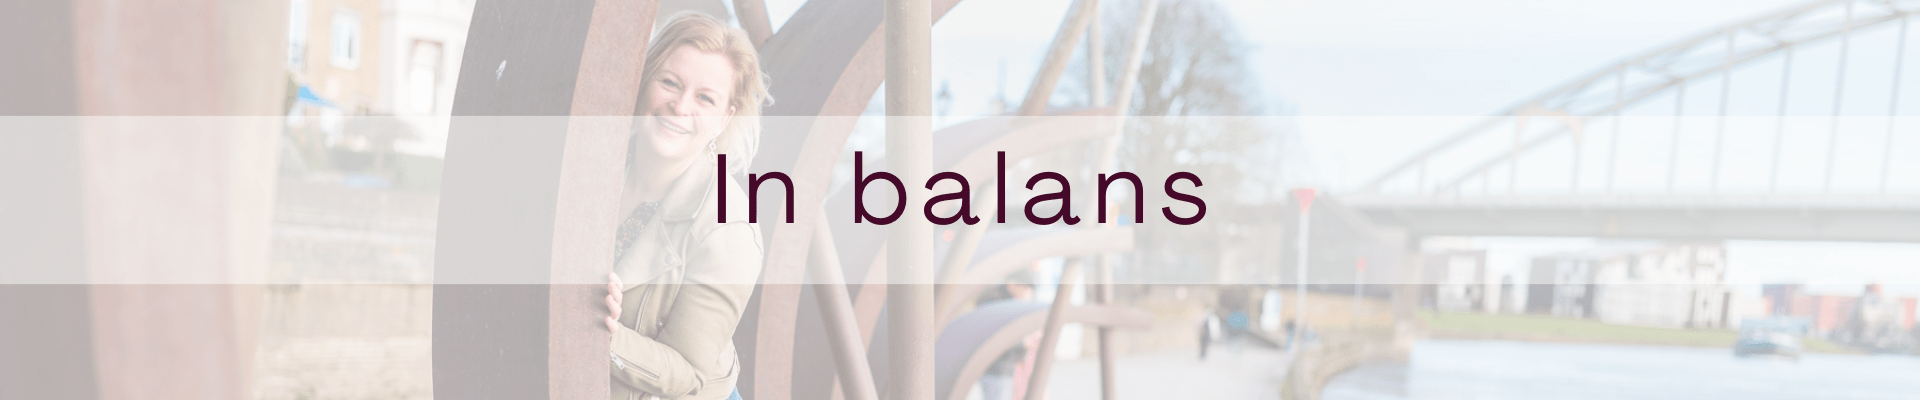 In Balans: Harmonie vind je hier. Ontdek praktische tips en tools om je leven in evenwicht te brengen en innerlijke rust te ervaren.